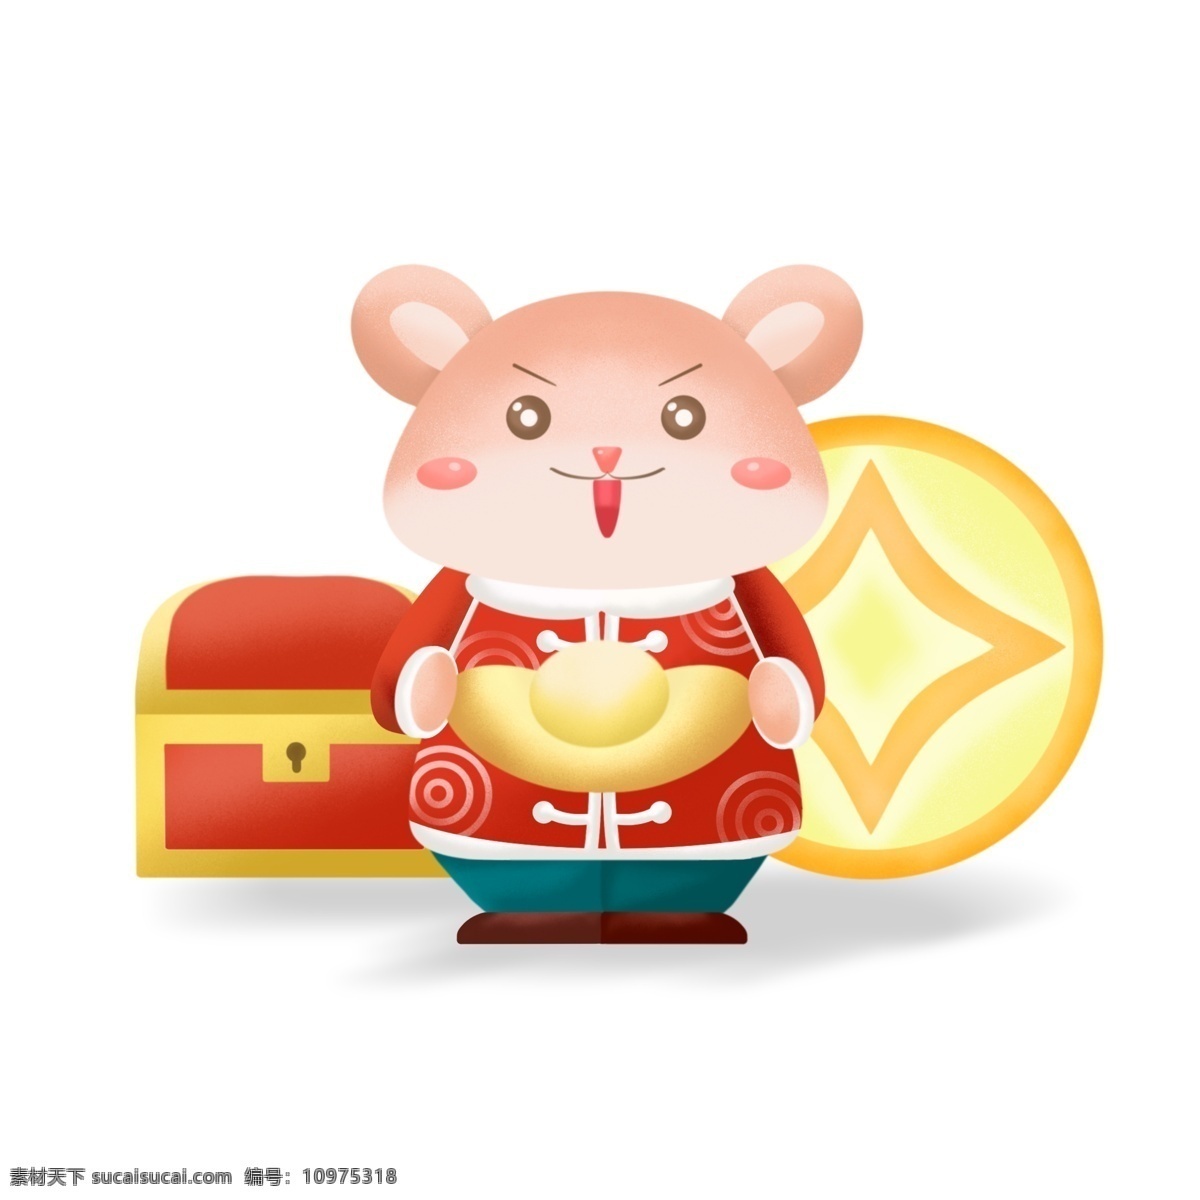 2020 鼠年 贺岁 可爱 卡通 鼠 抱 元宝 春节 卡通鼠 金币 宝箱 装饰图案